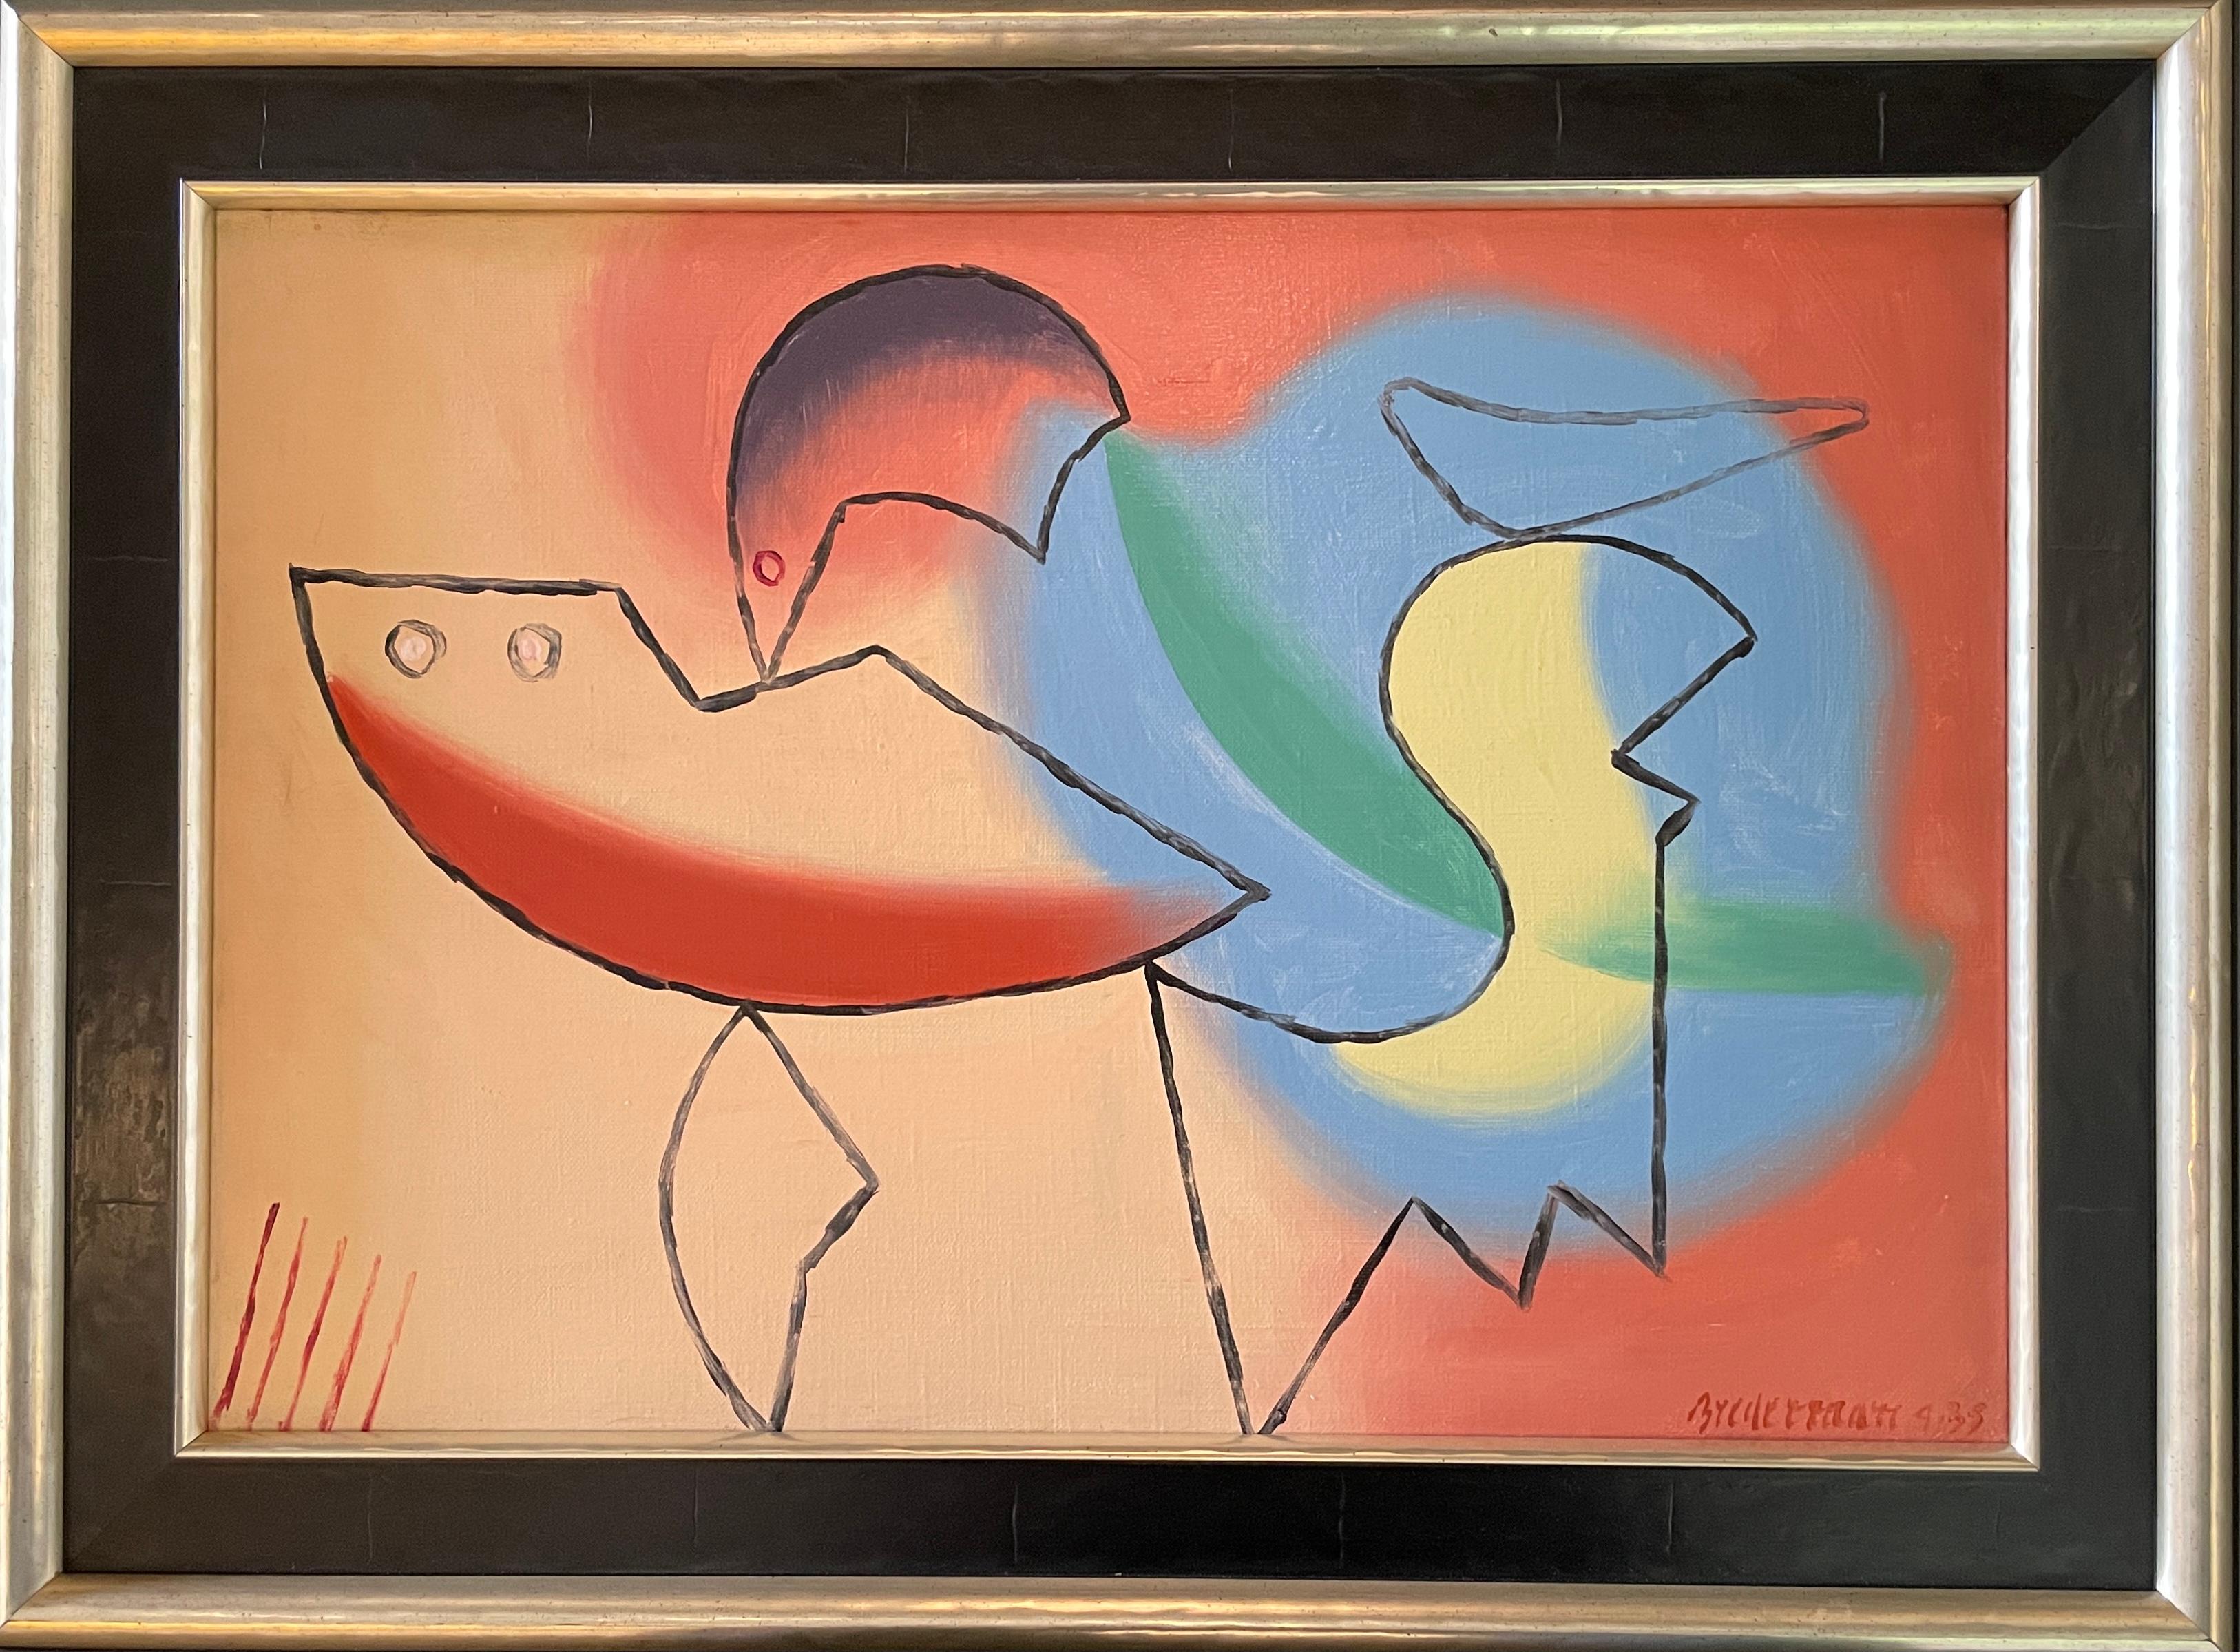 Signé et daté "Biederman 4-35" en bas à droite.

A propos de l'artiste : Charles Joseph Biederman était un artiste abstrait américain du XXe siècle, surtout connu pour ses reliefs constructivistes d'inspiration cubiste. Artistics est souvent